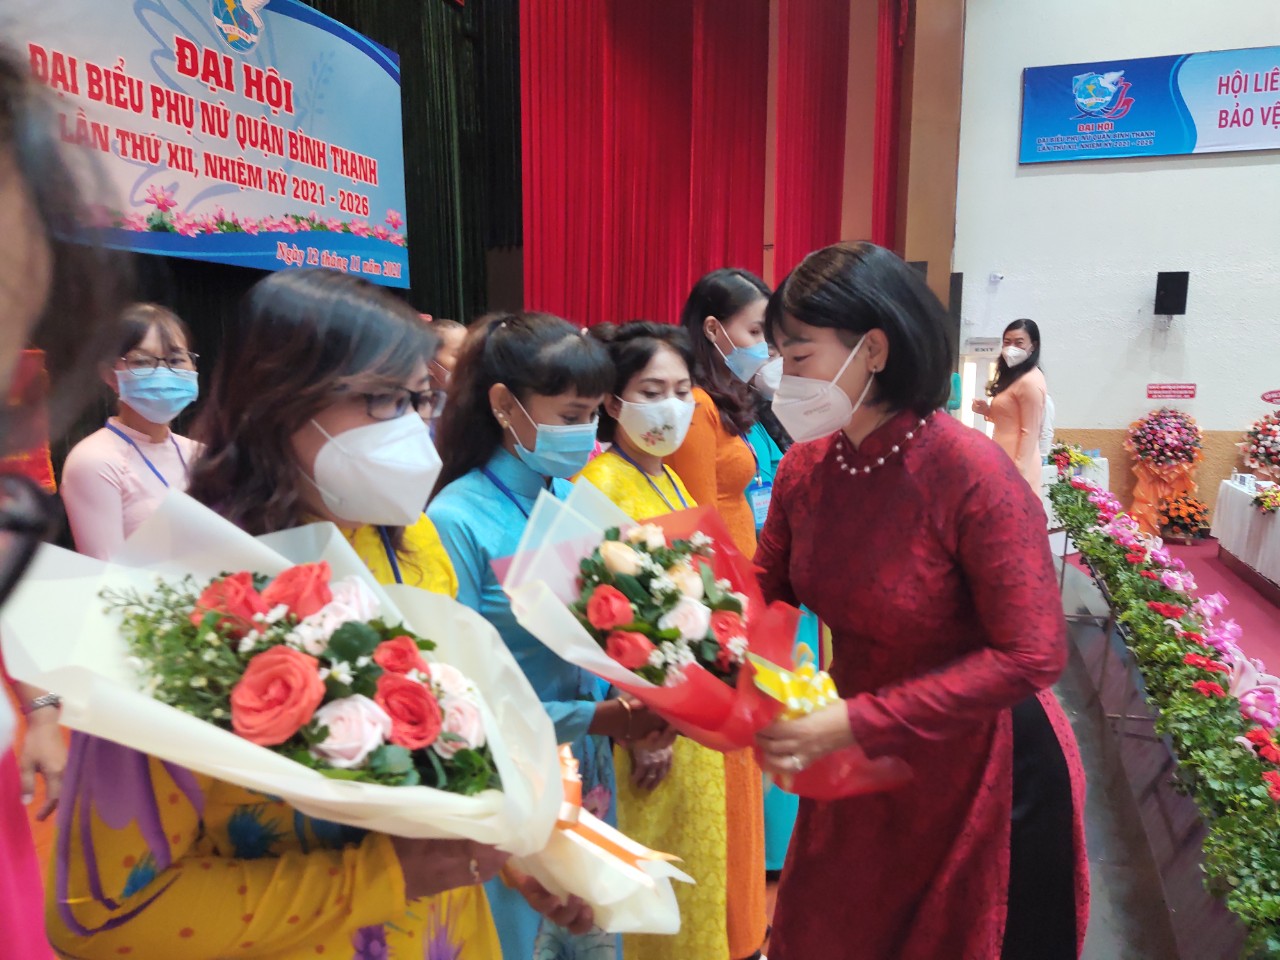 Bà Trần Thị Phương Hoa - Phó Chủ tịch Hội LHPN TP - tặng hoa chúc mừng BCH Hội LHPN Q. Bình Thạnh nhiệm kỳ 2021-2026